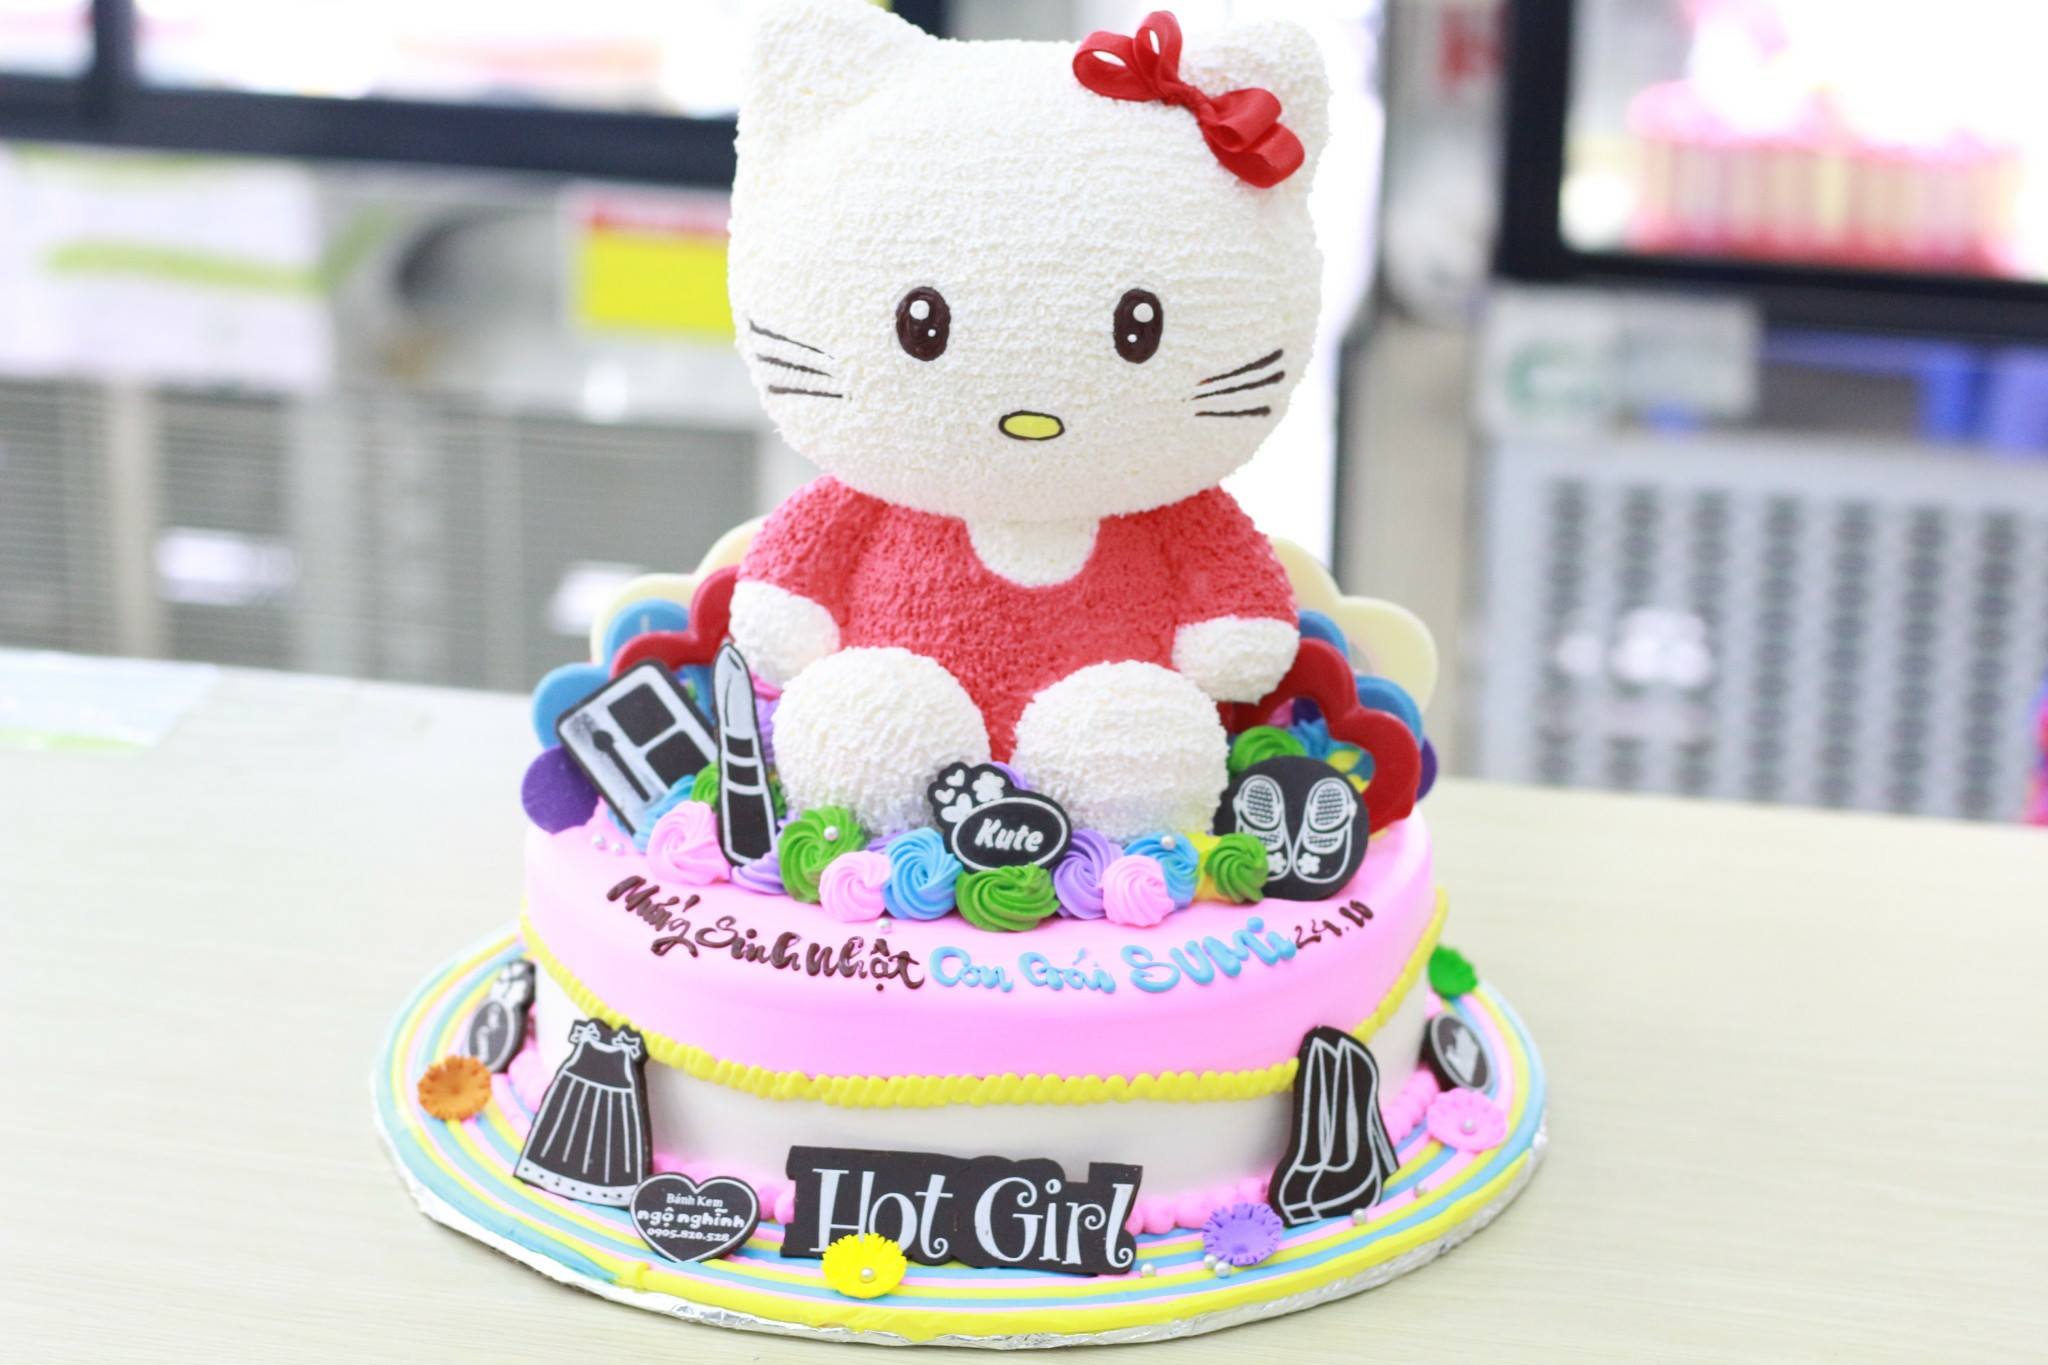 Cùng đến với bánh sinh nhật mèo Hello Kitty đáng yêu cho ngày sinh nhật của bạn! Hình ảnh sắc nét, màu sắc tươi sáng và hình ảnh chiếc bánh ngọt ngào sẽ khiến bạn muốn ăn ngay lập tức. Chắc chắn bạn sẽ yêu thích chiếc bánh mèo xinh đẹp này.